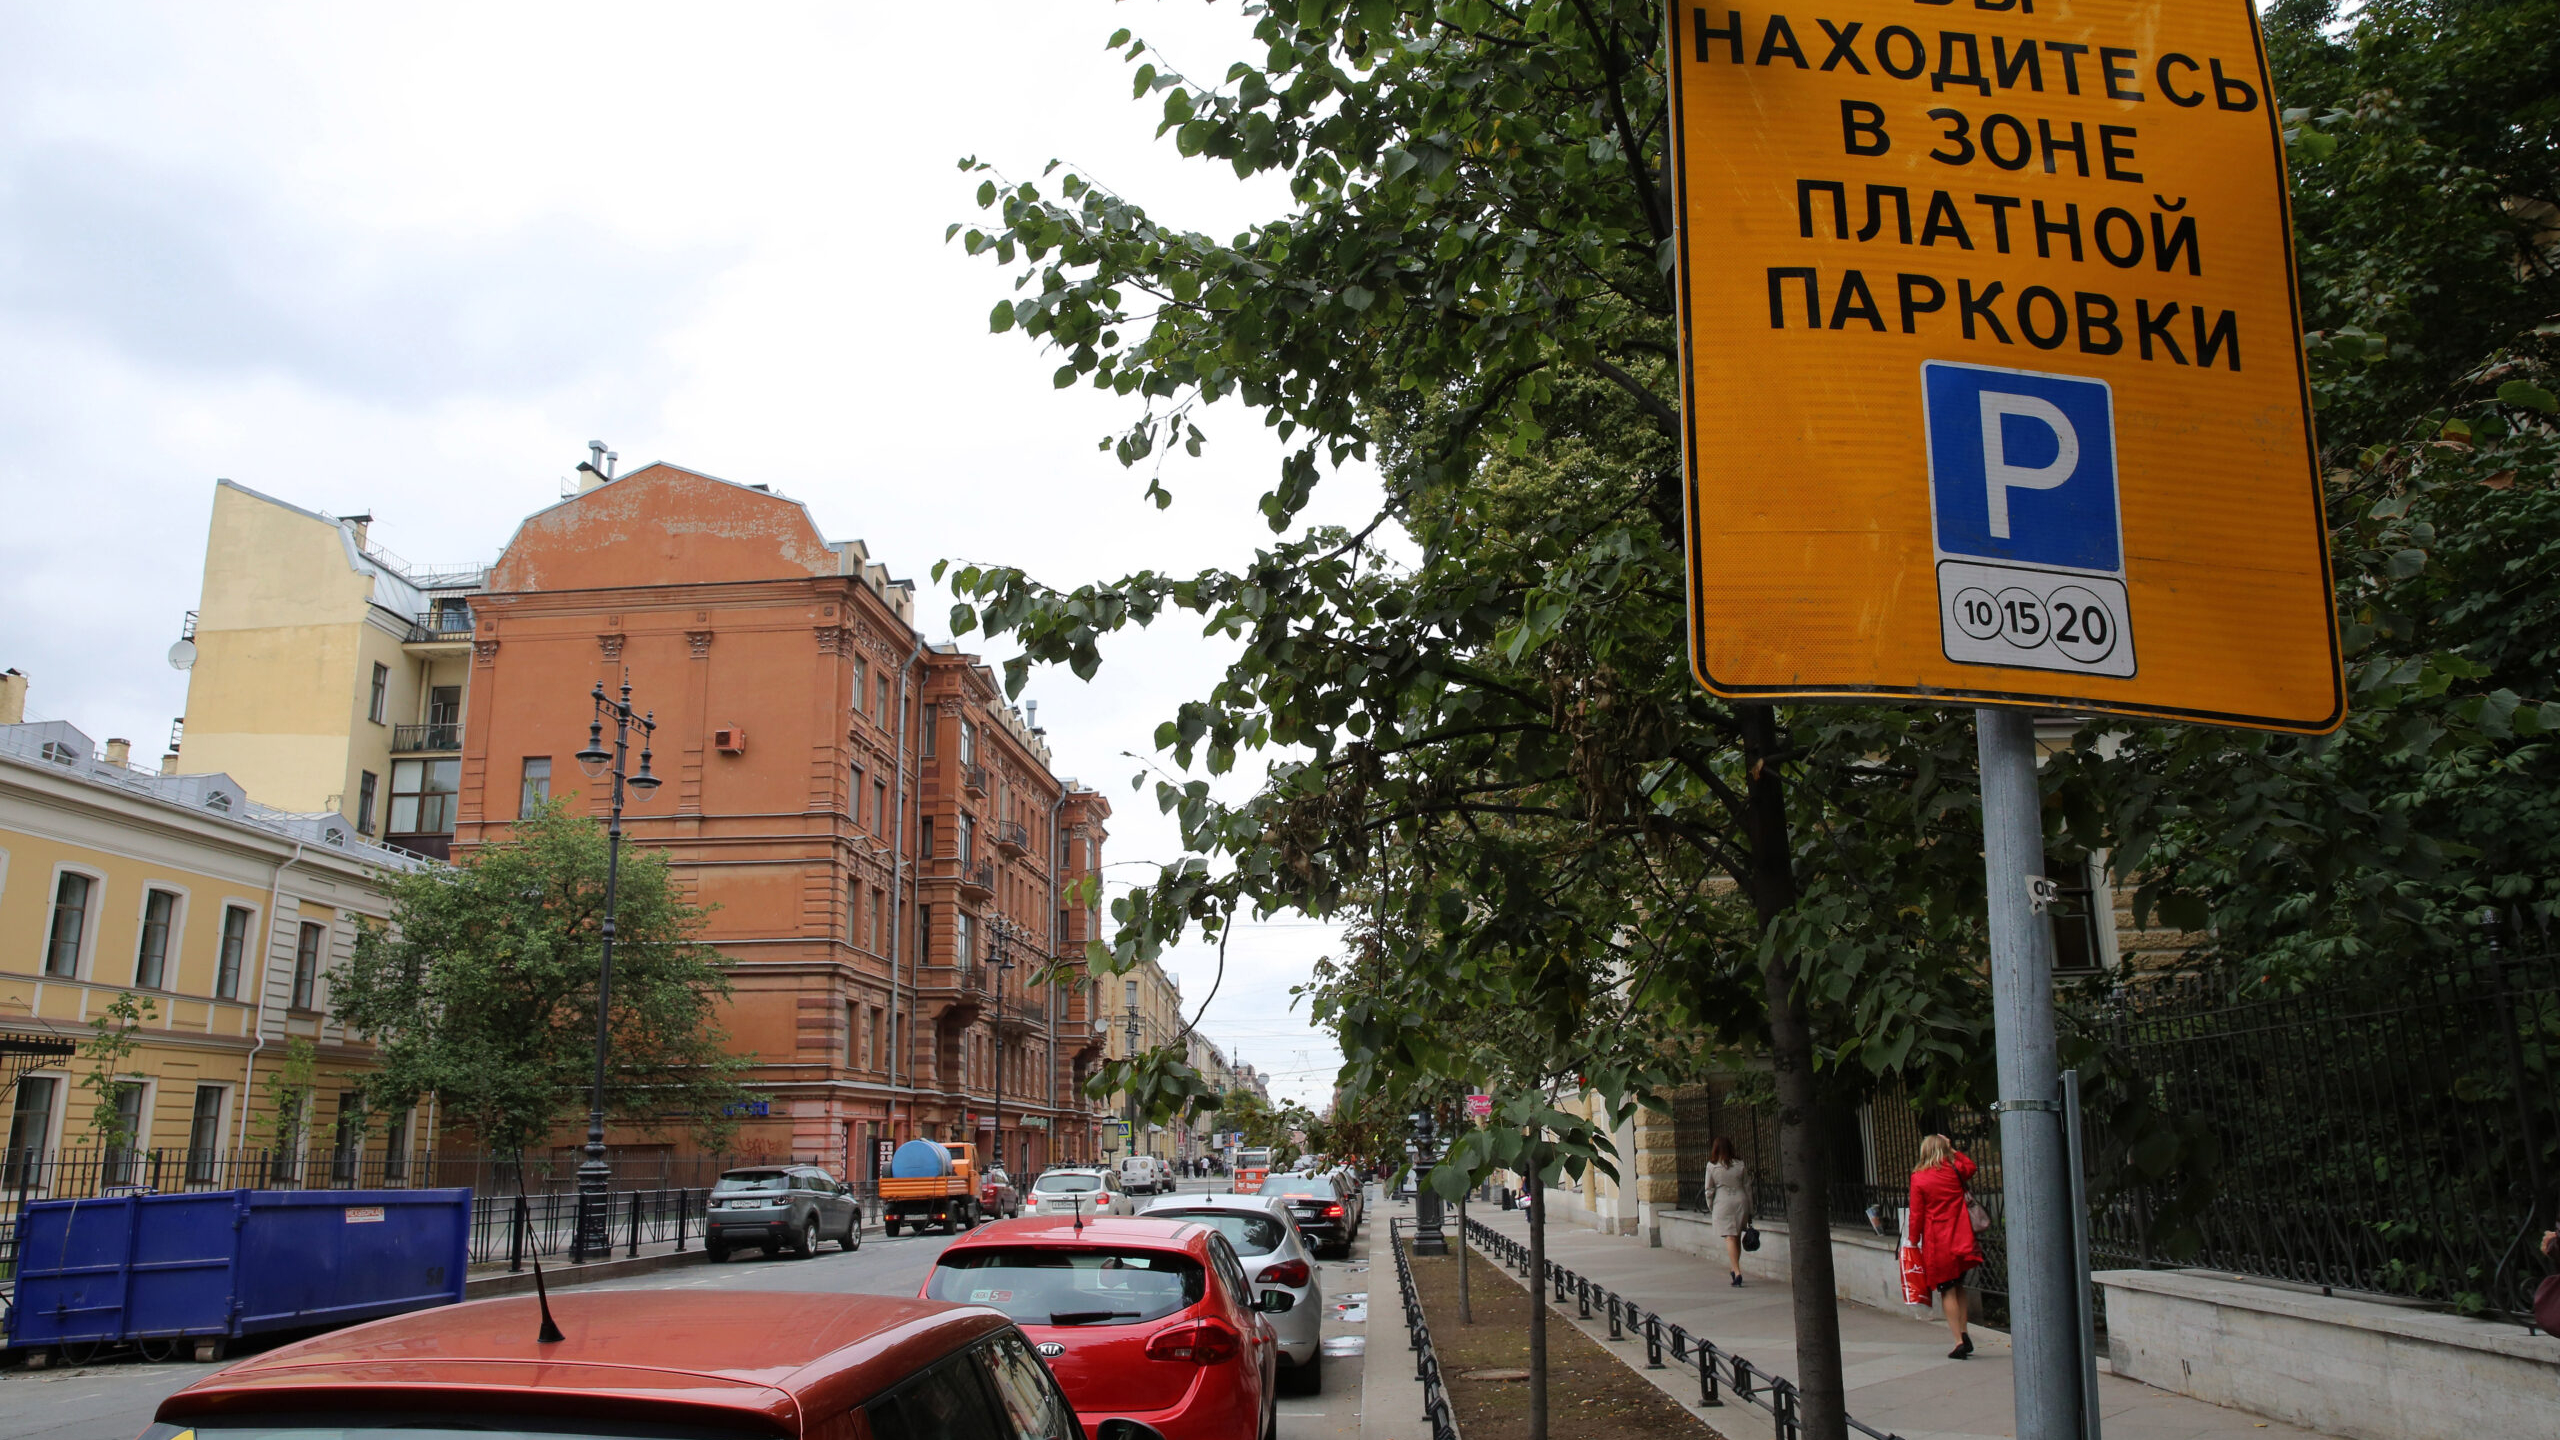 Жителям Центрального района Петербурга разрешат парковать авто в соседних округах